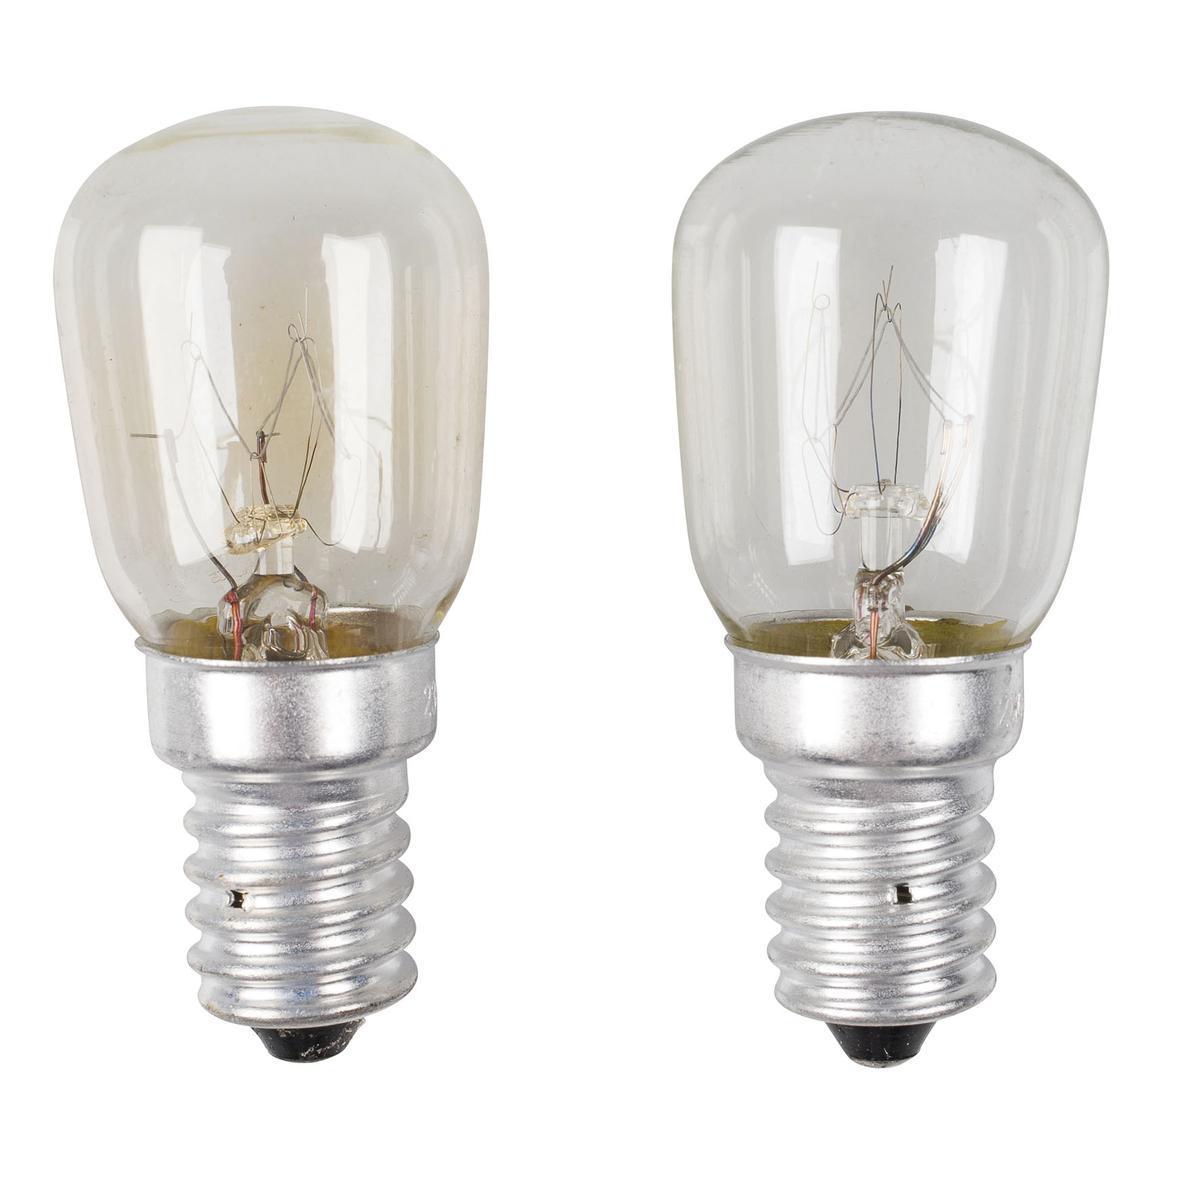 2 ampoules halogènes Frigo E14 - 12 x 2.5 x 14 cm - Transparent